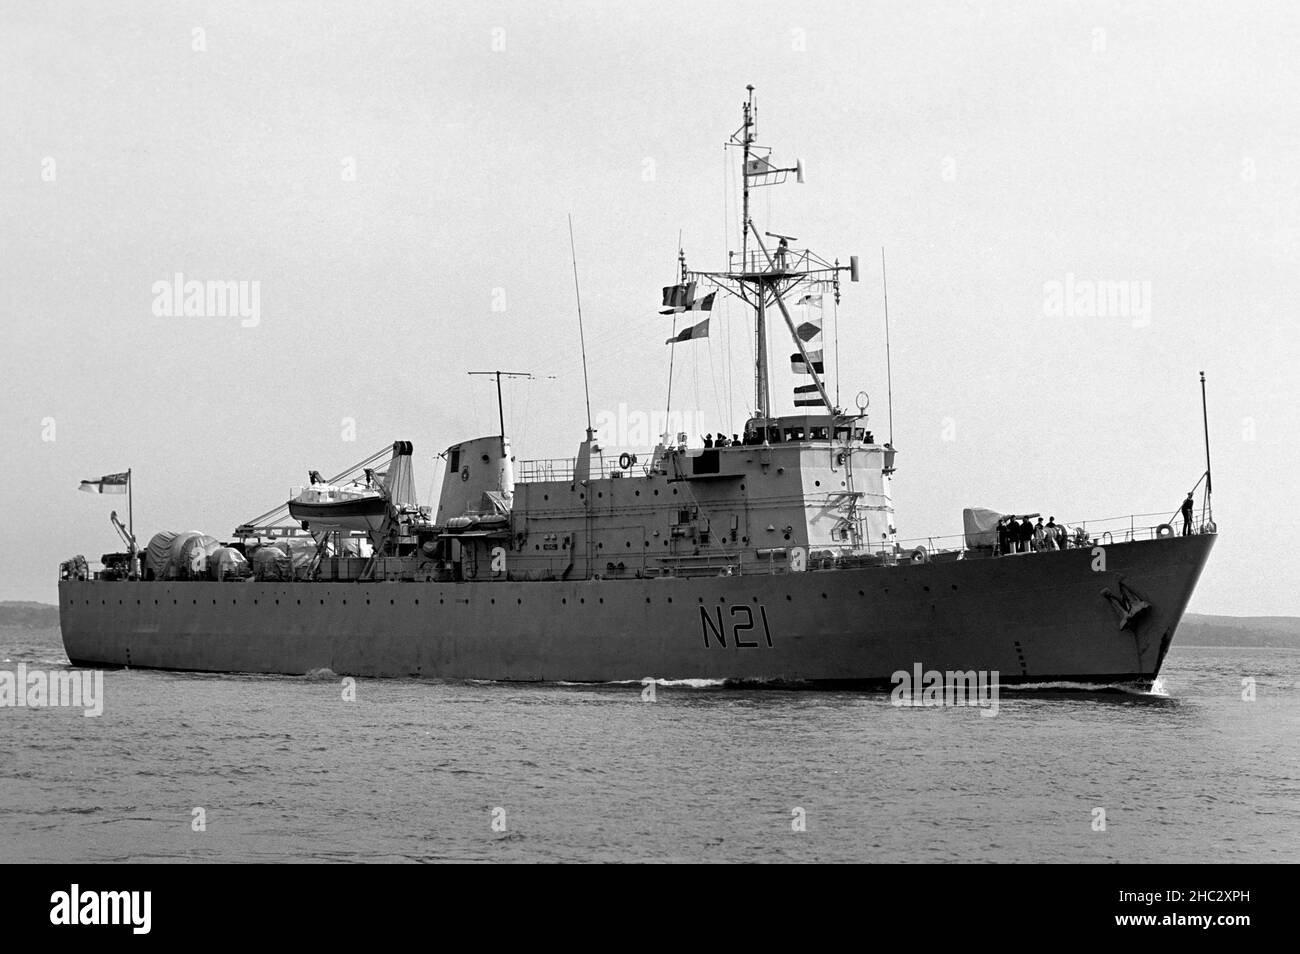 HMS Abdiel - N21 - le petit-couche de la Marine royale approche le port de Portsmouth, le Solent, Portsmouth, Hampshire, Angleterre,ROYAUME-UNI Banque D'Images